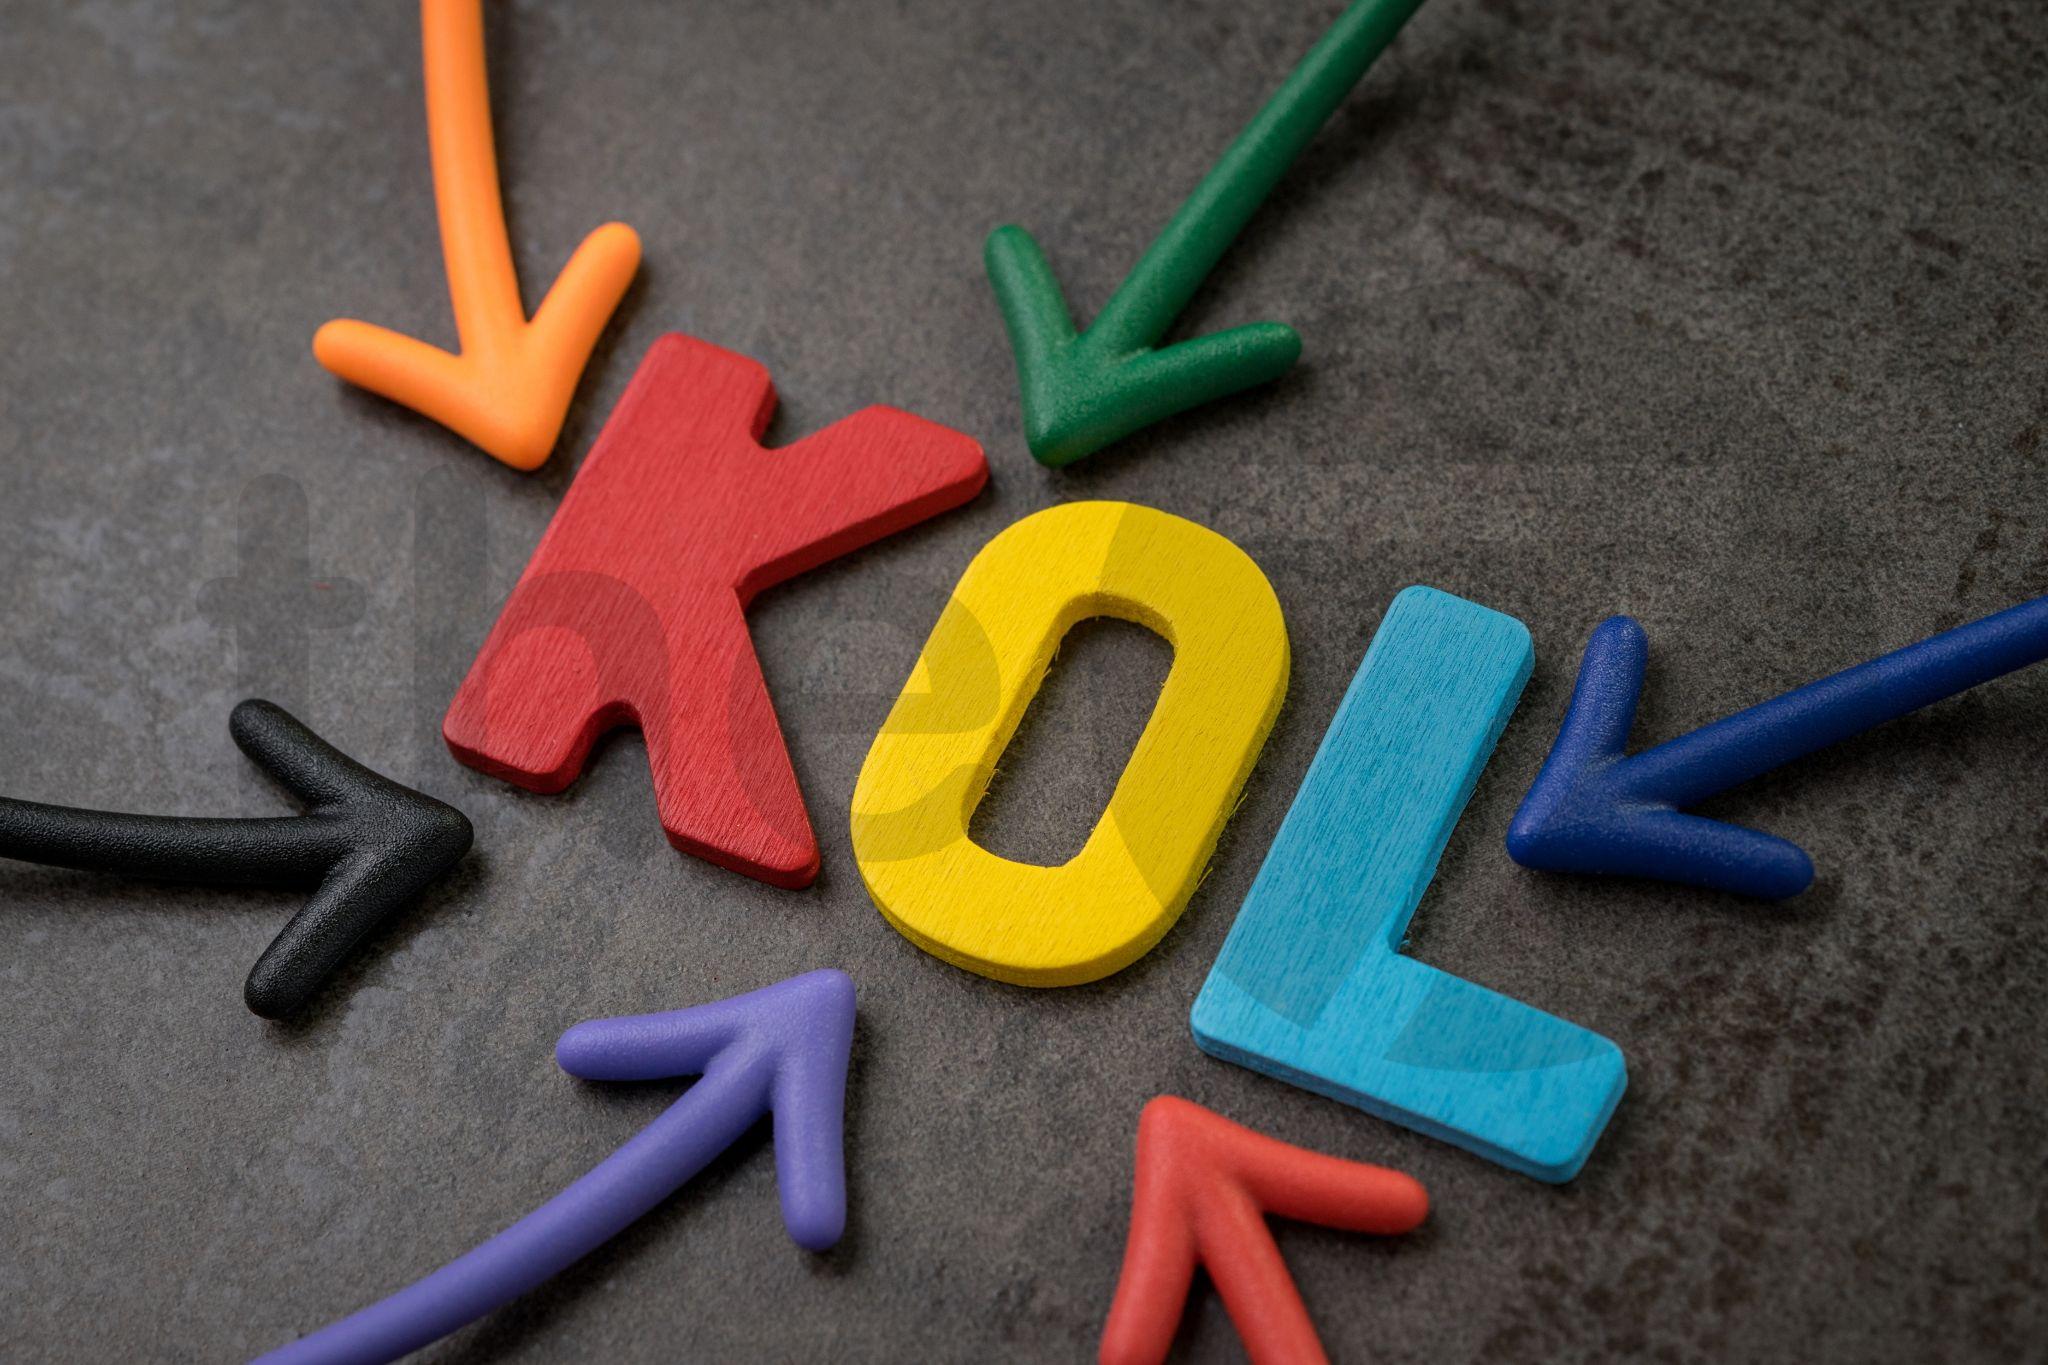 KOL, KOC giúp doanh nghiệp tìm kiếm khách hàng tiềm năng online hiệu quả. Nguồn ảnh: The7